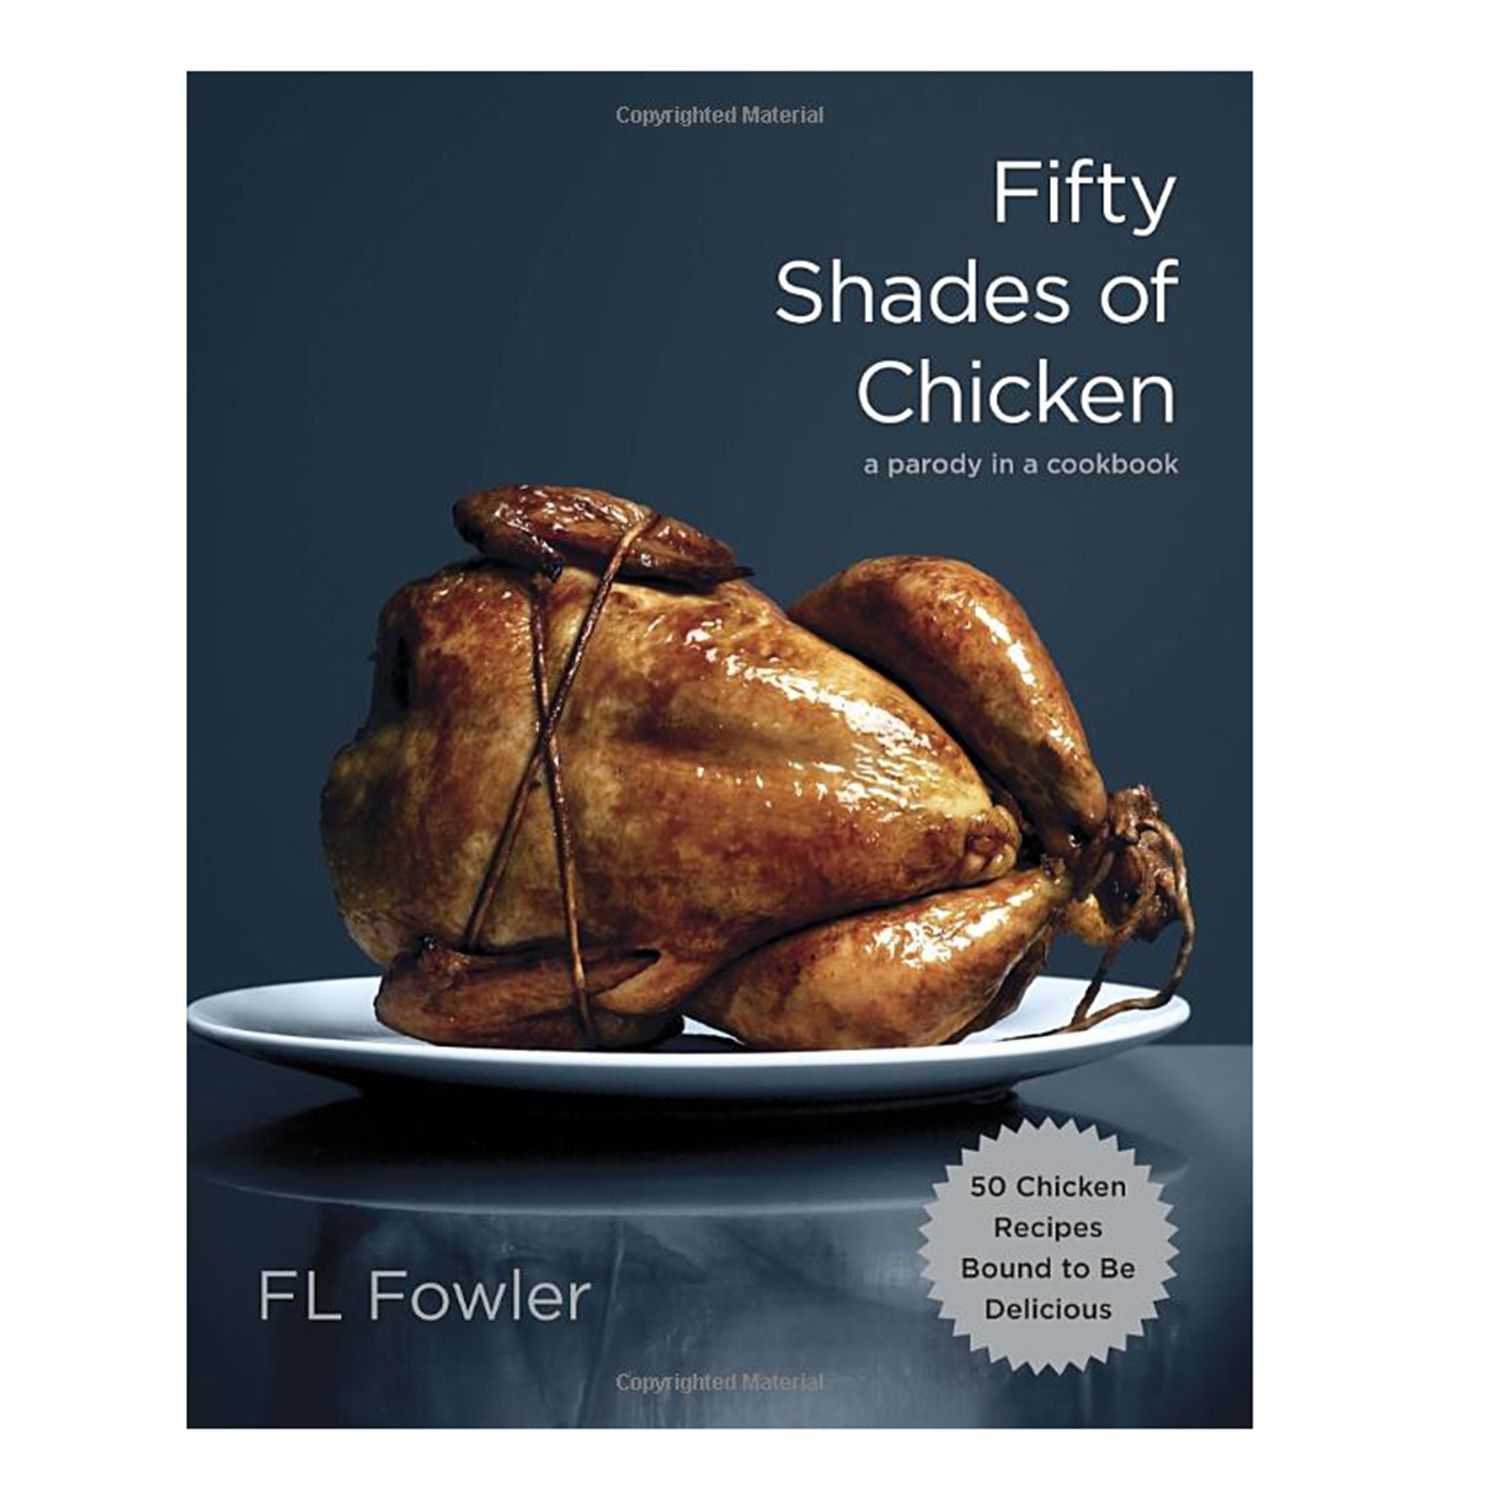 치킨의 50 가지 그림자 : 요리 책의 패러디